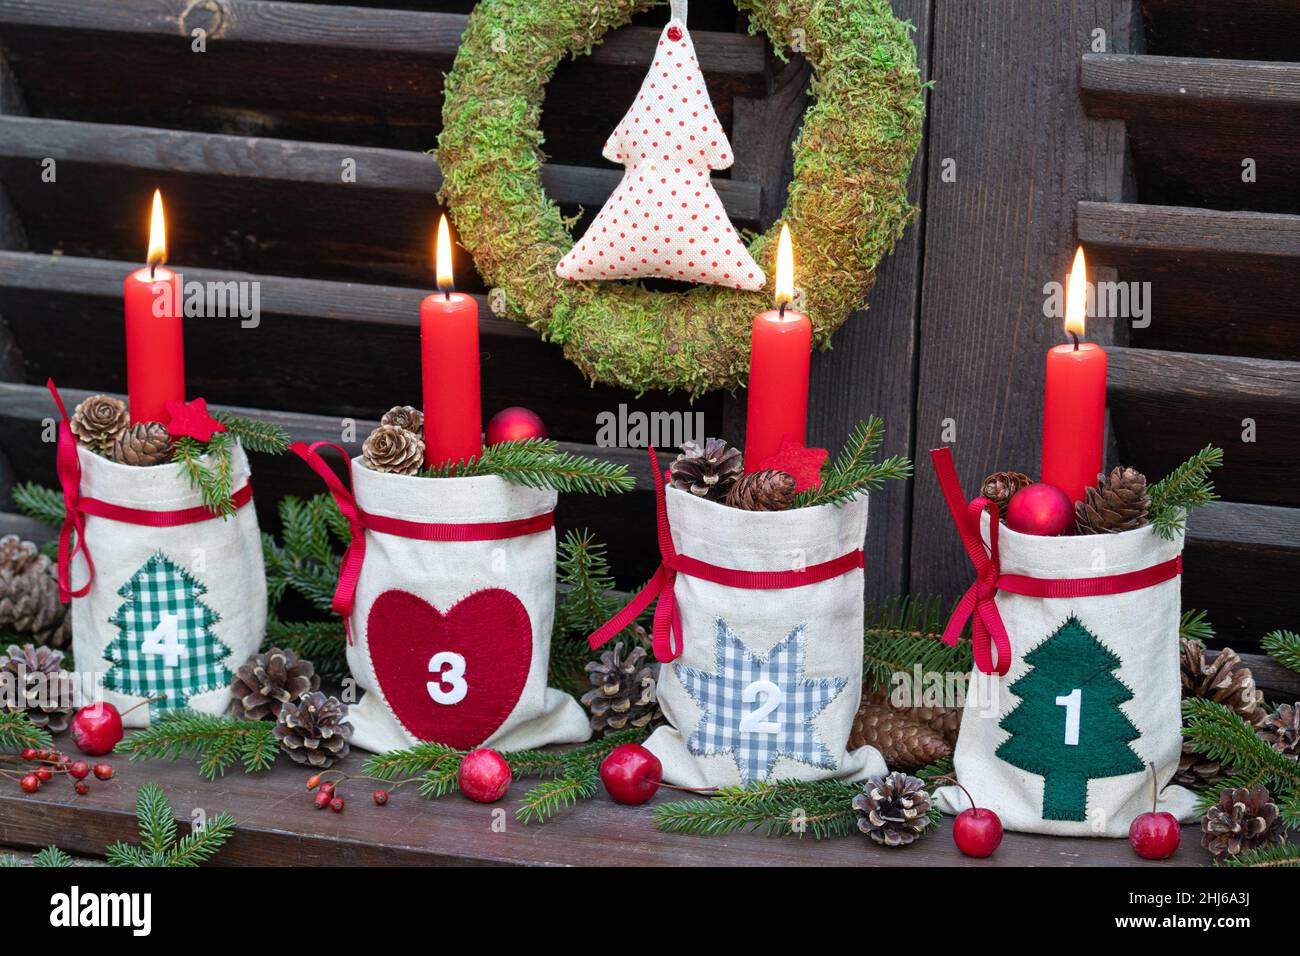 decorazione natalizia con candele rosse d'avvento in sacchi, coni e rami di abete Foto Stock